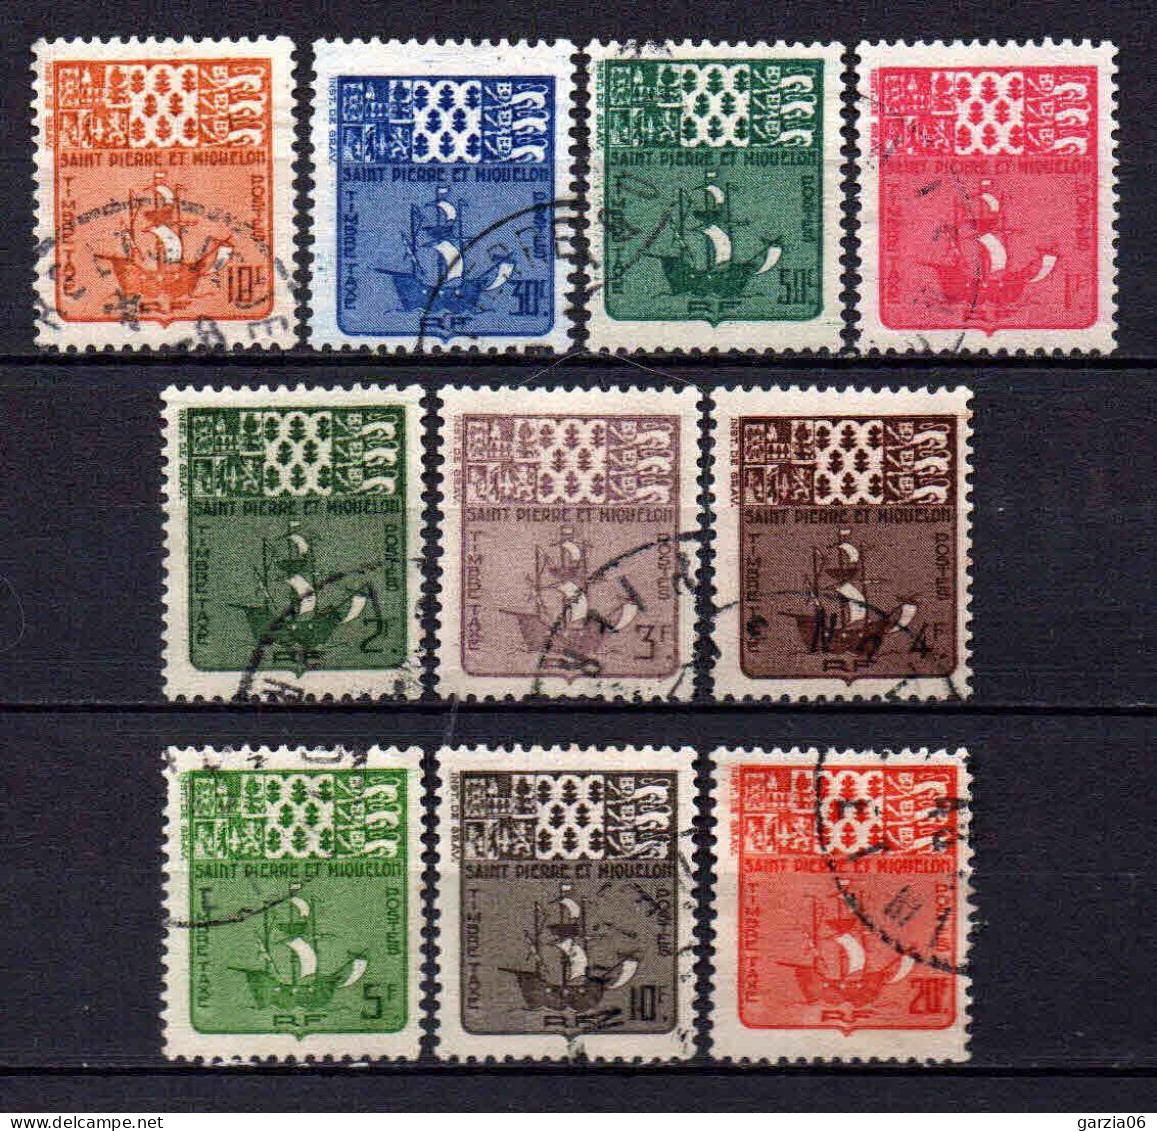 St Pierre Et Miquelon - 1947 - Tb Taxe  N° 67 à 76  - Oblit - Used - Postage Due